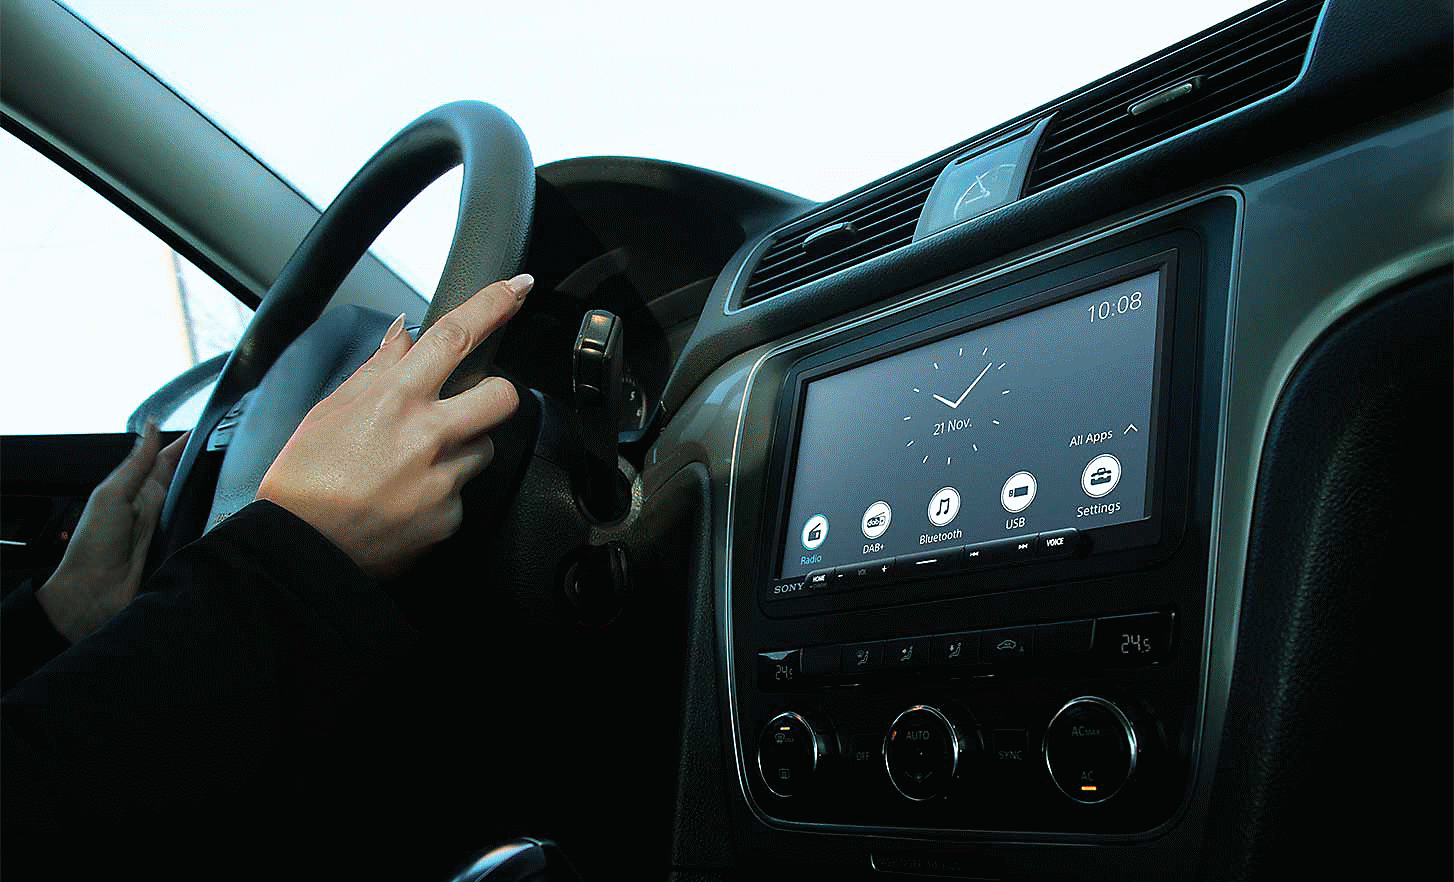 XAV-AX4050 vaizdas prietaisų skydelyje su laikrodžiu ir įvairiais mygtukais ekrane.